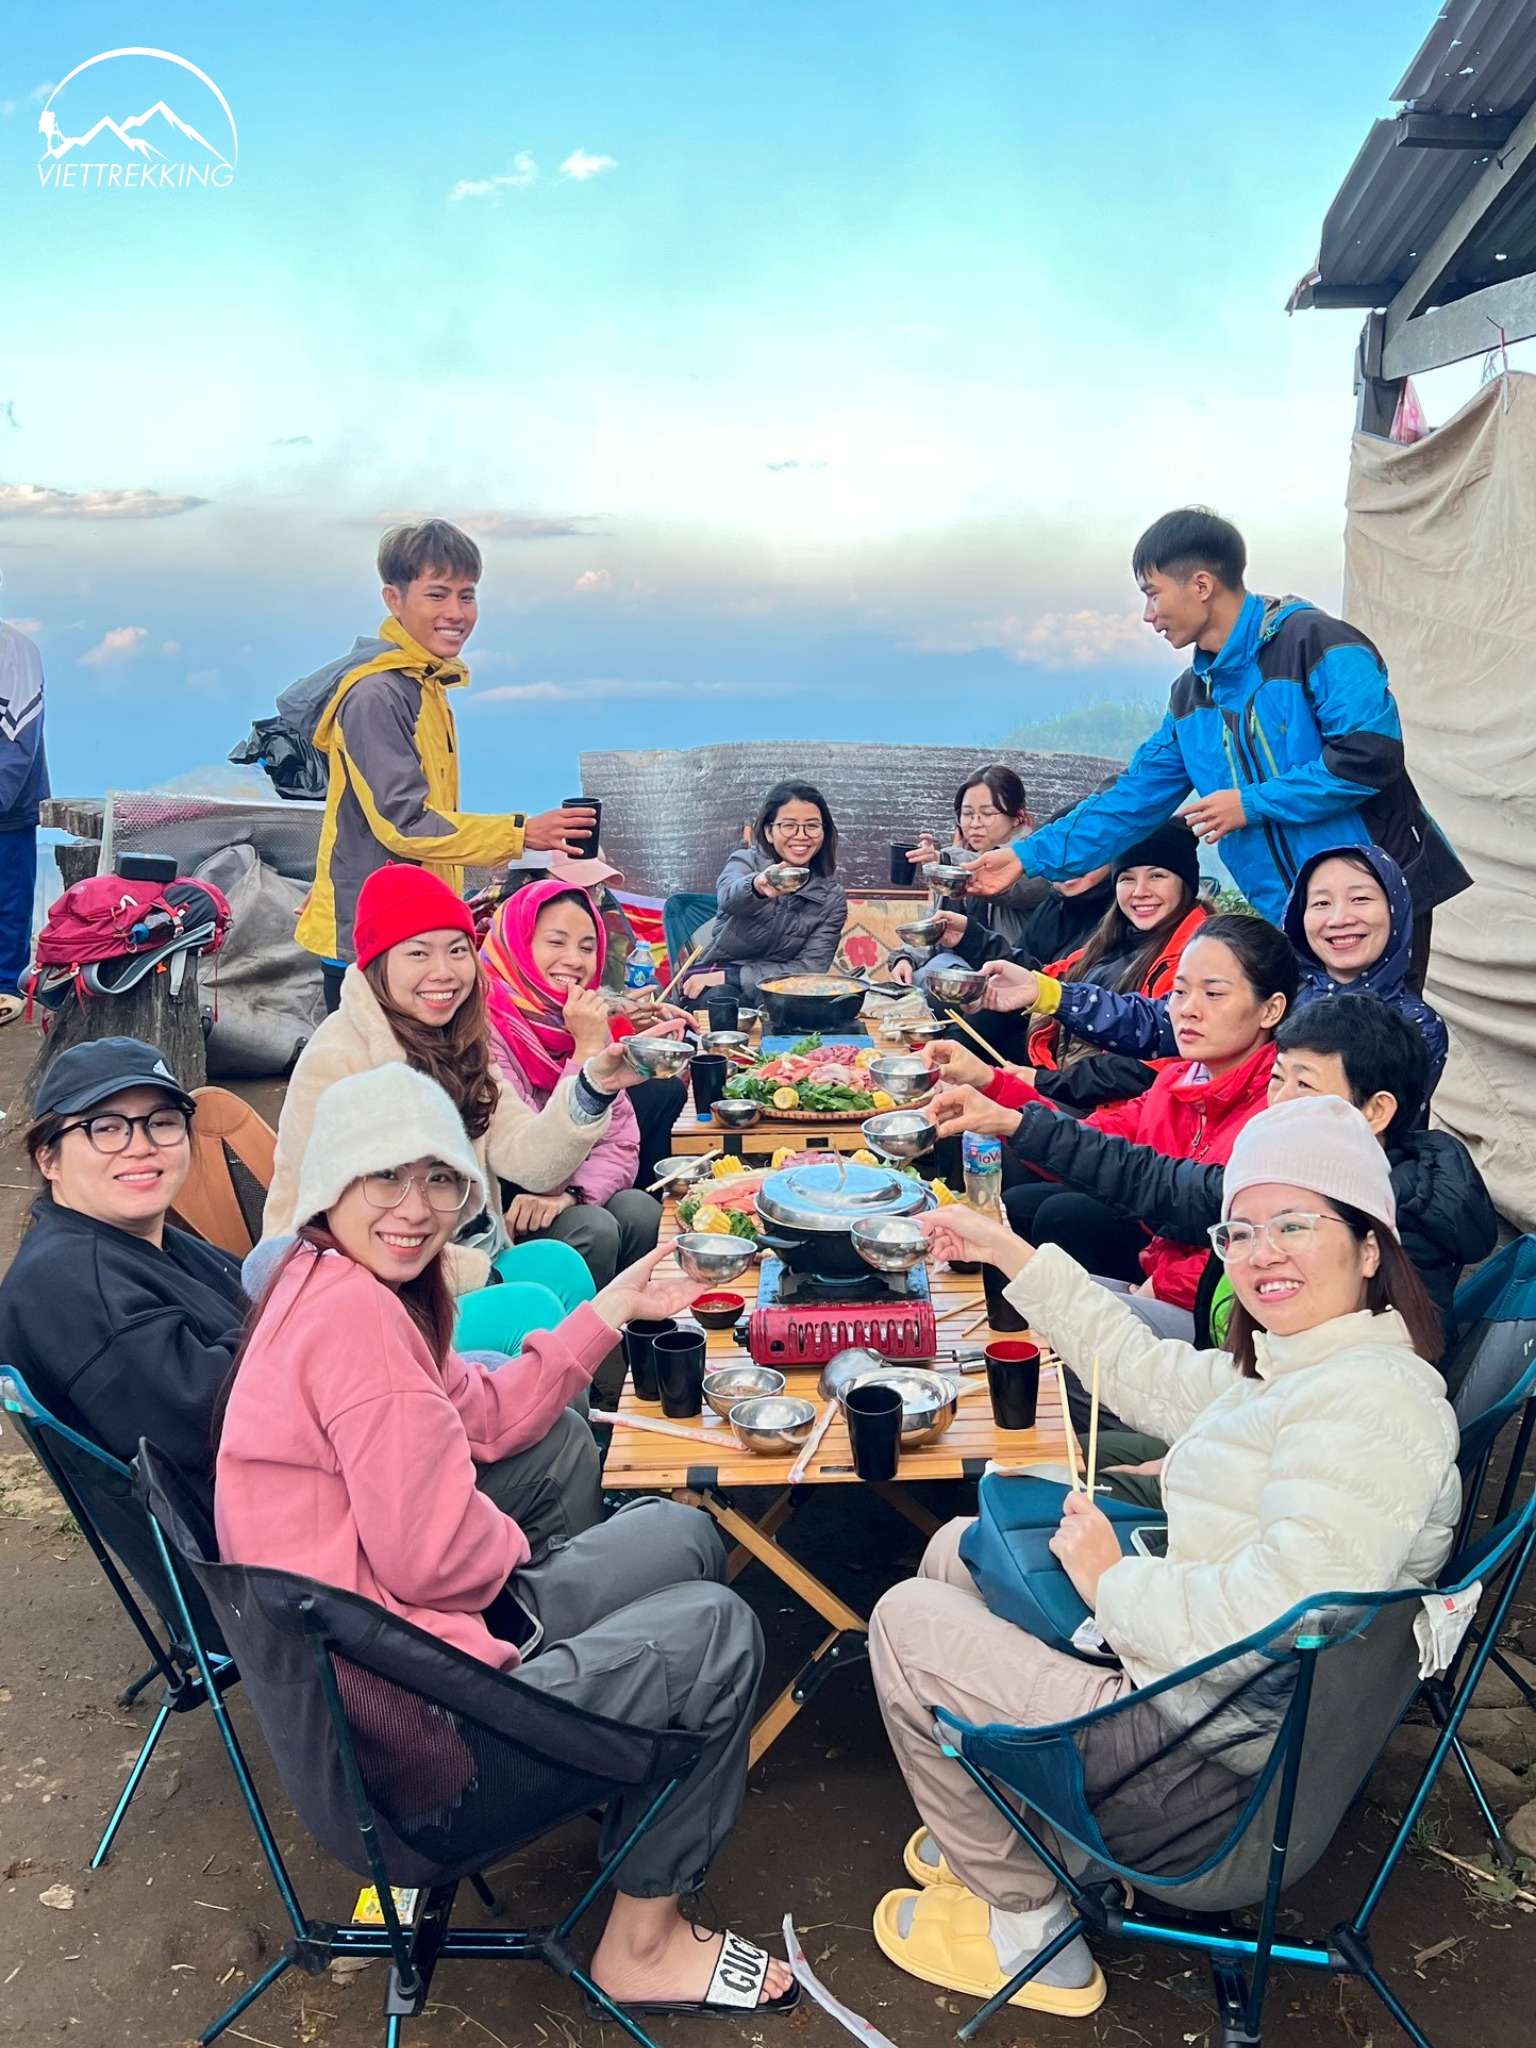 Bàn ghế camping cho những bữa ăn trên núi tuyệt vời của Viettrekking